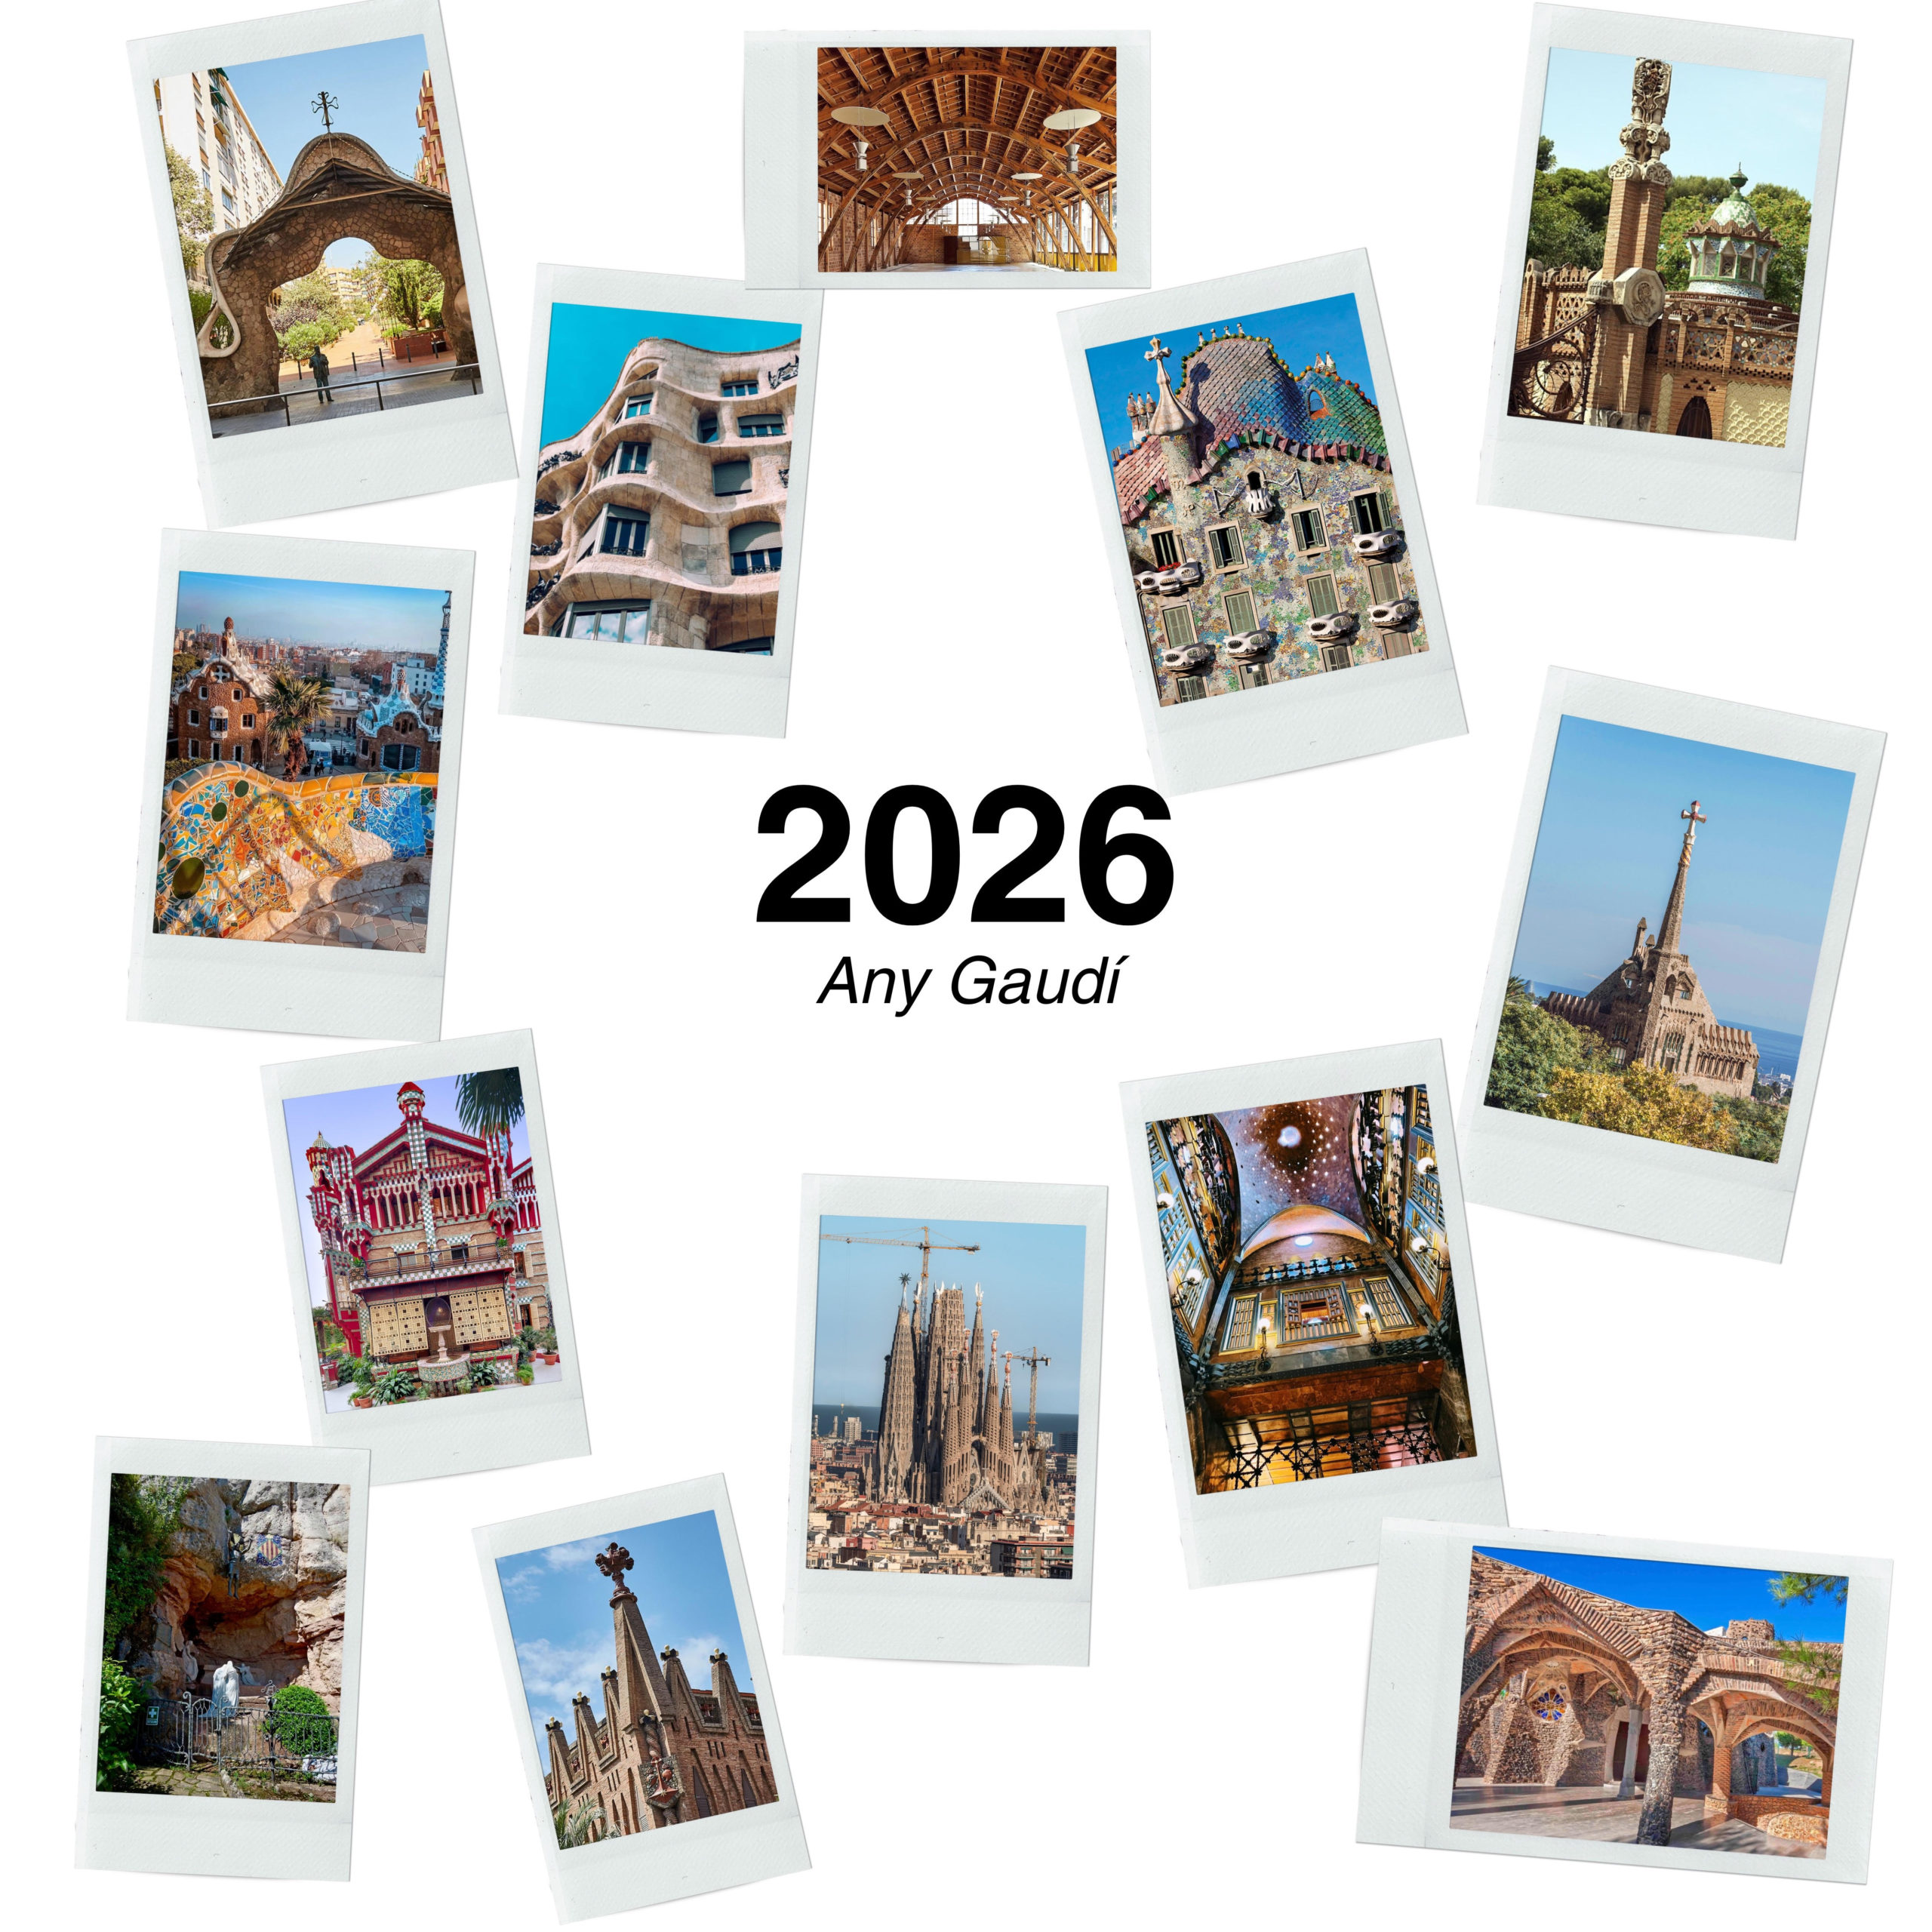 L’any 2026 es commemorarà la figura d’Antoni Gaudí i Cornet